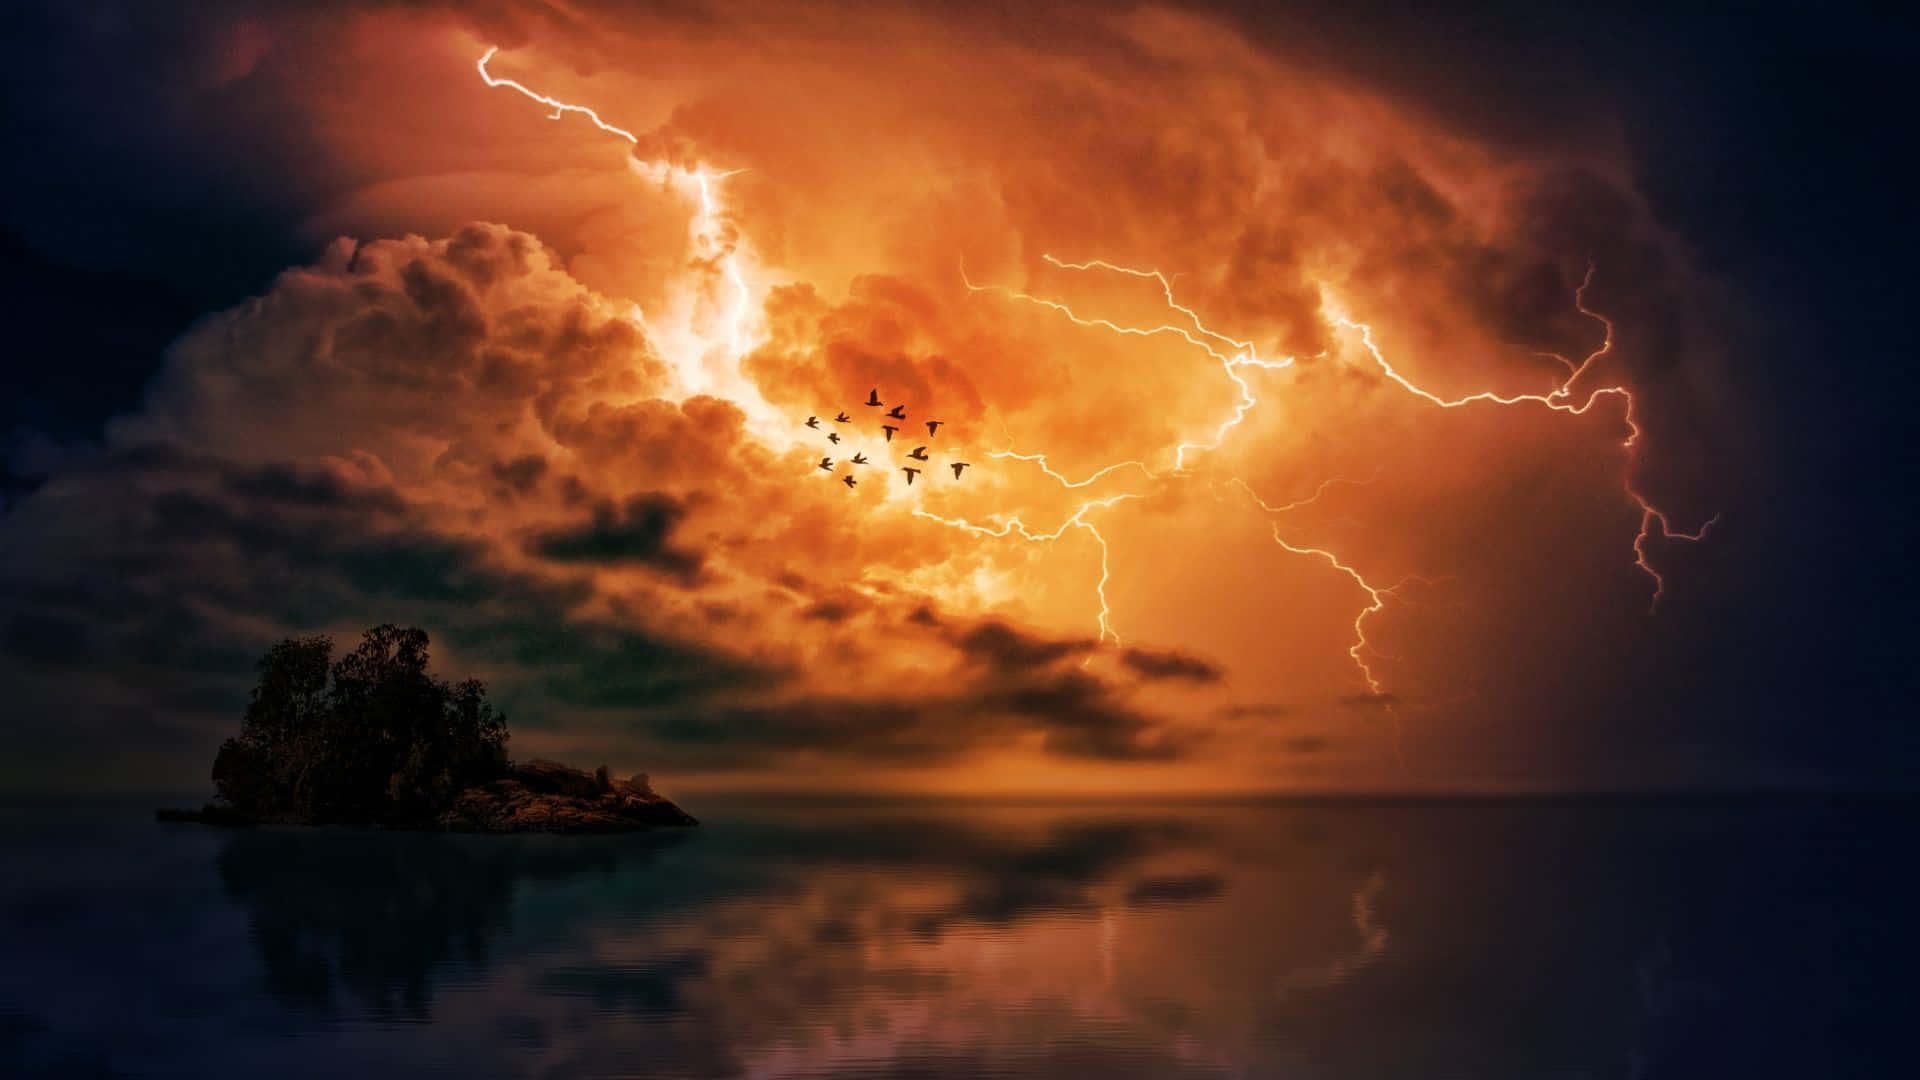 Stunning Night Thunderstorm